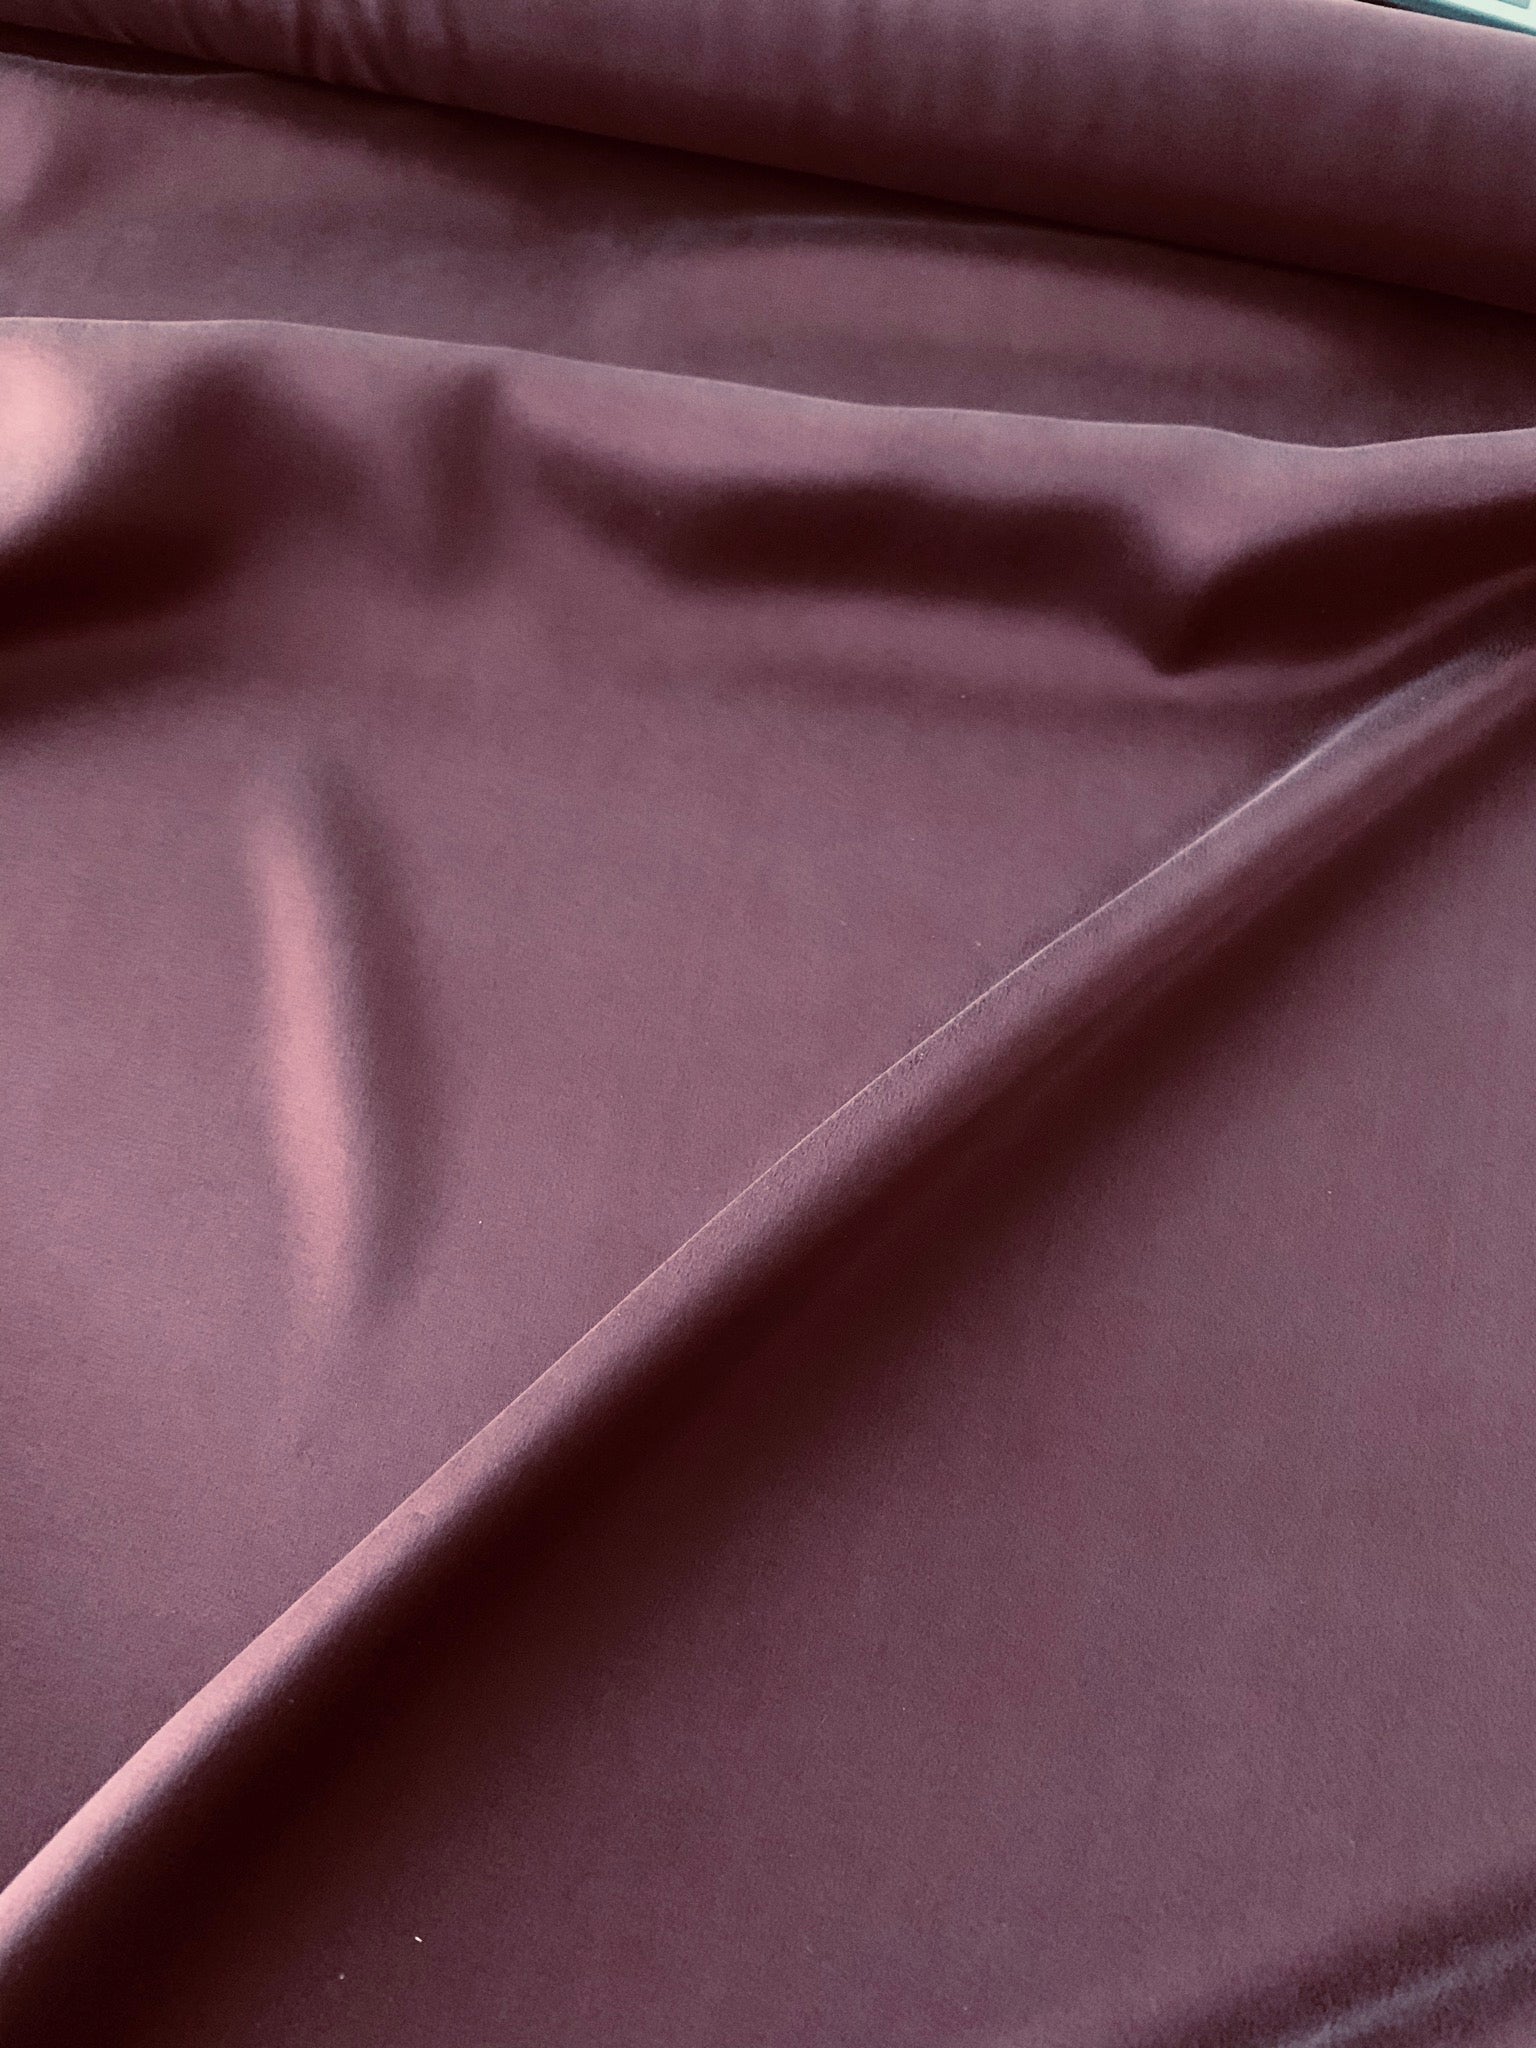 Atelier: Silk satin in merlot